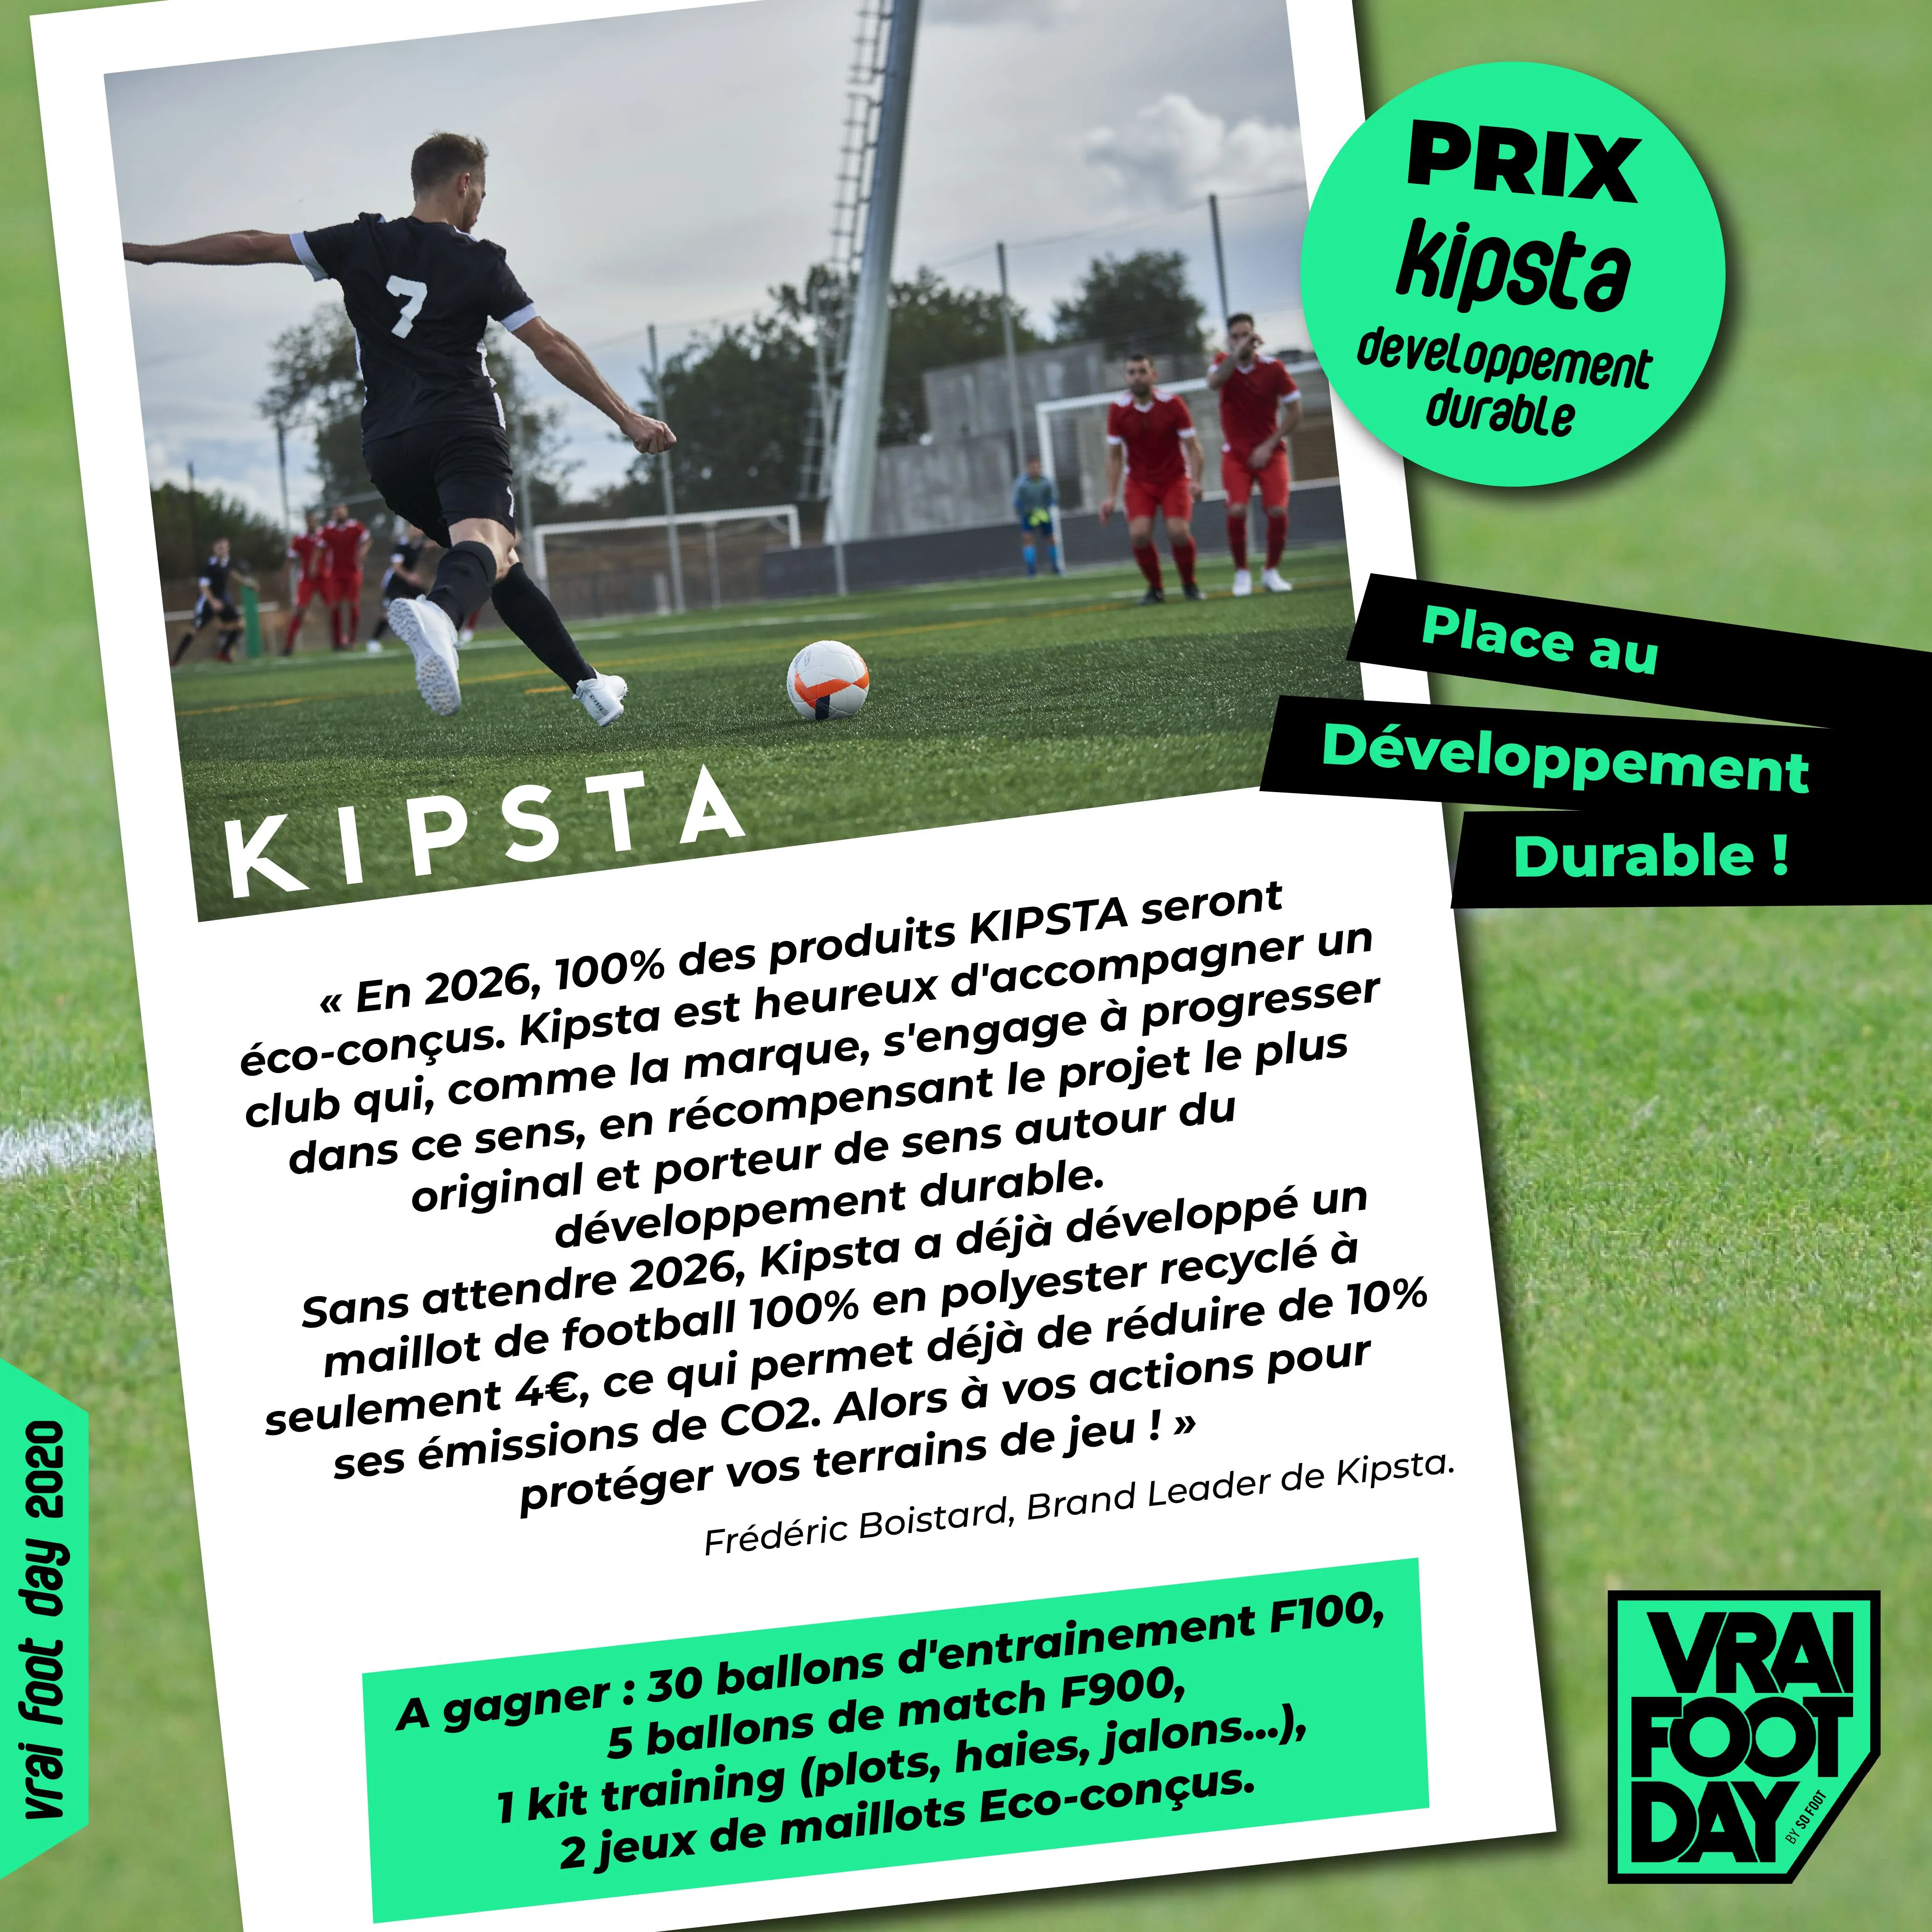 Prix «<span style="font-size:50%">&nbsp;</span>Kipsta Développement Durable» : équipe ton club en matériel de foot éco-conçus !